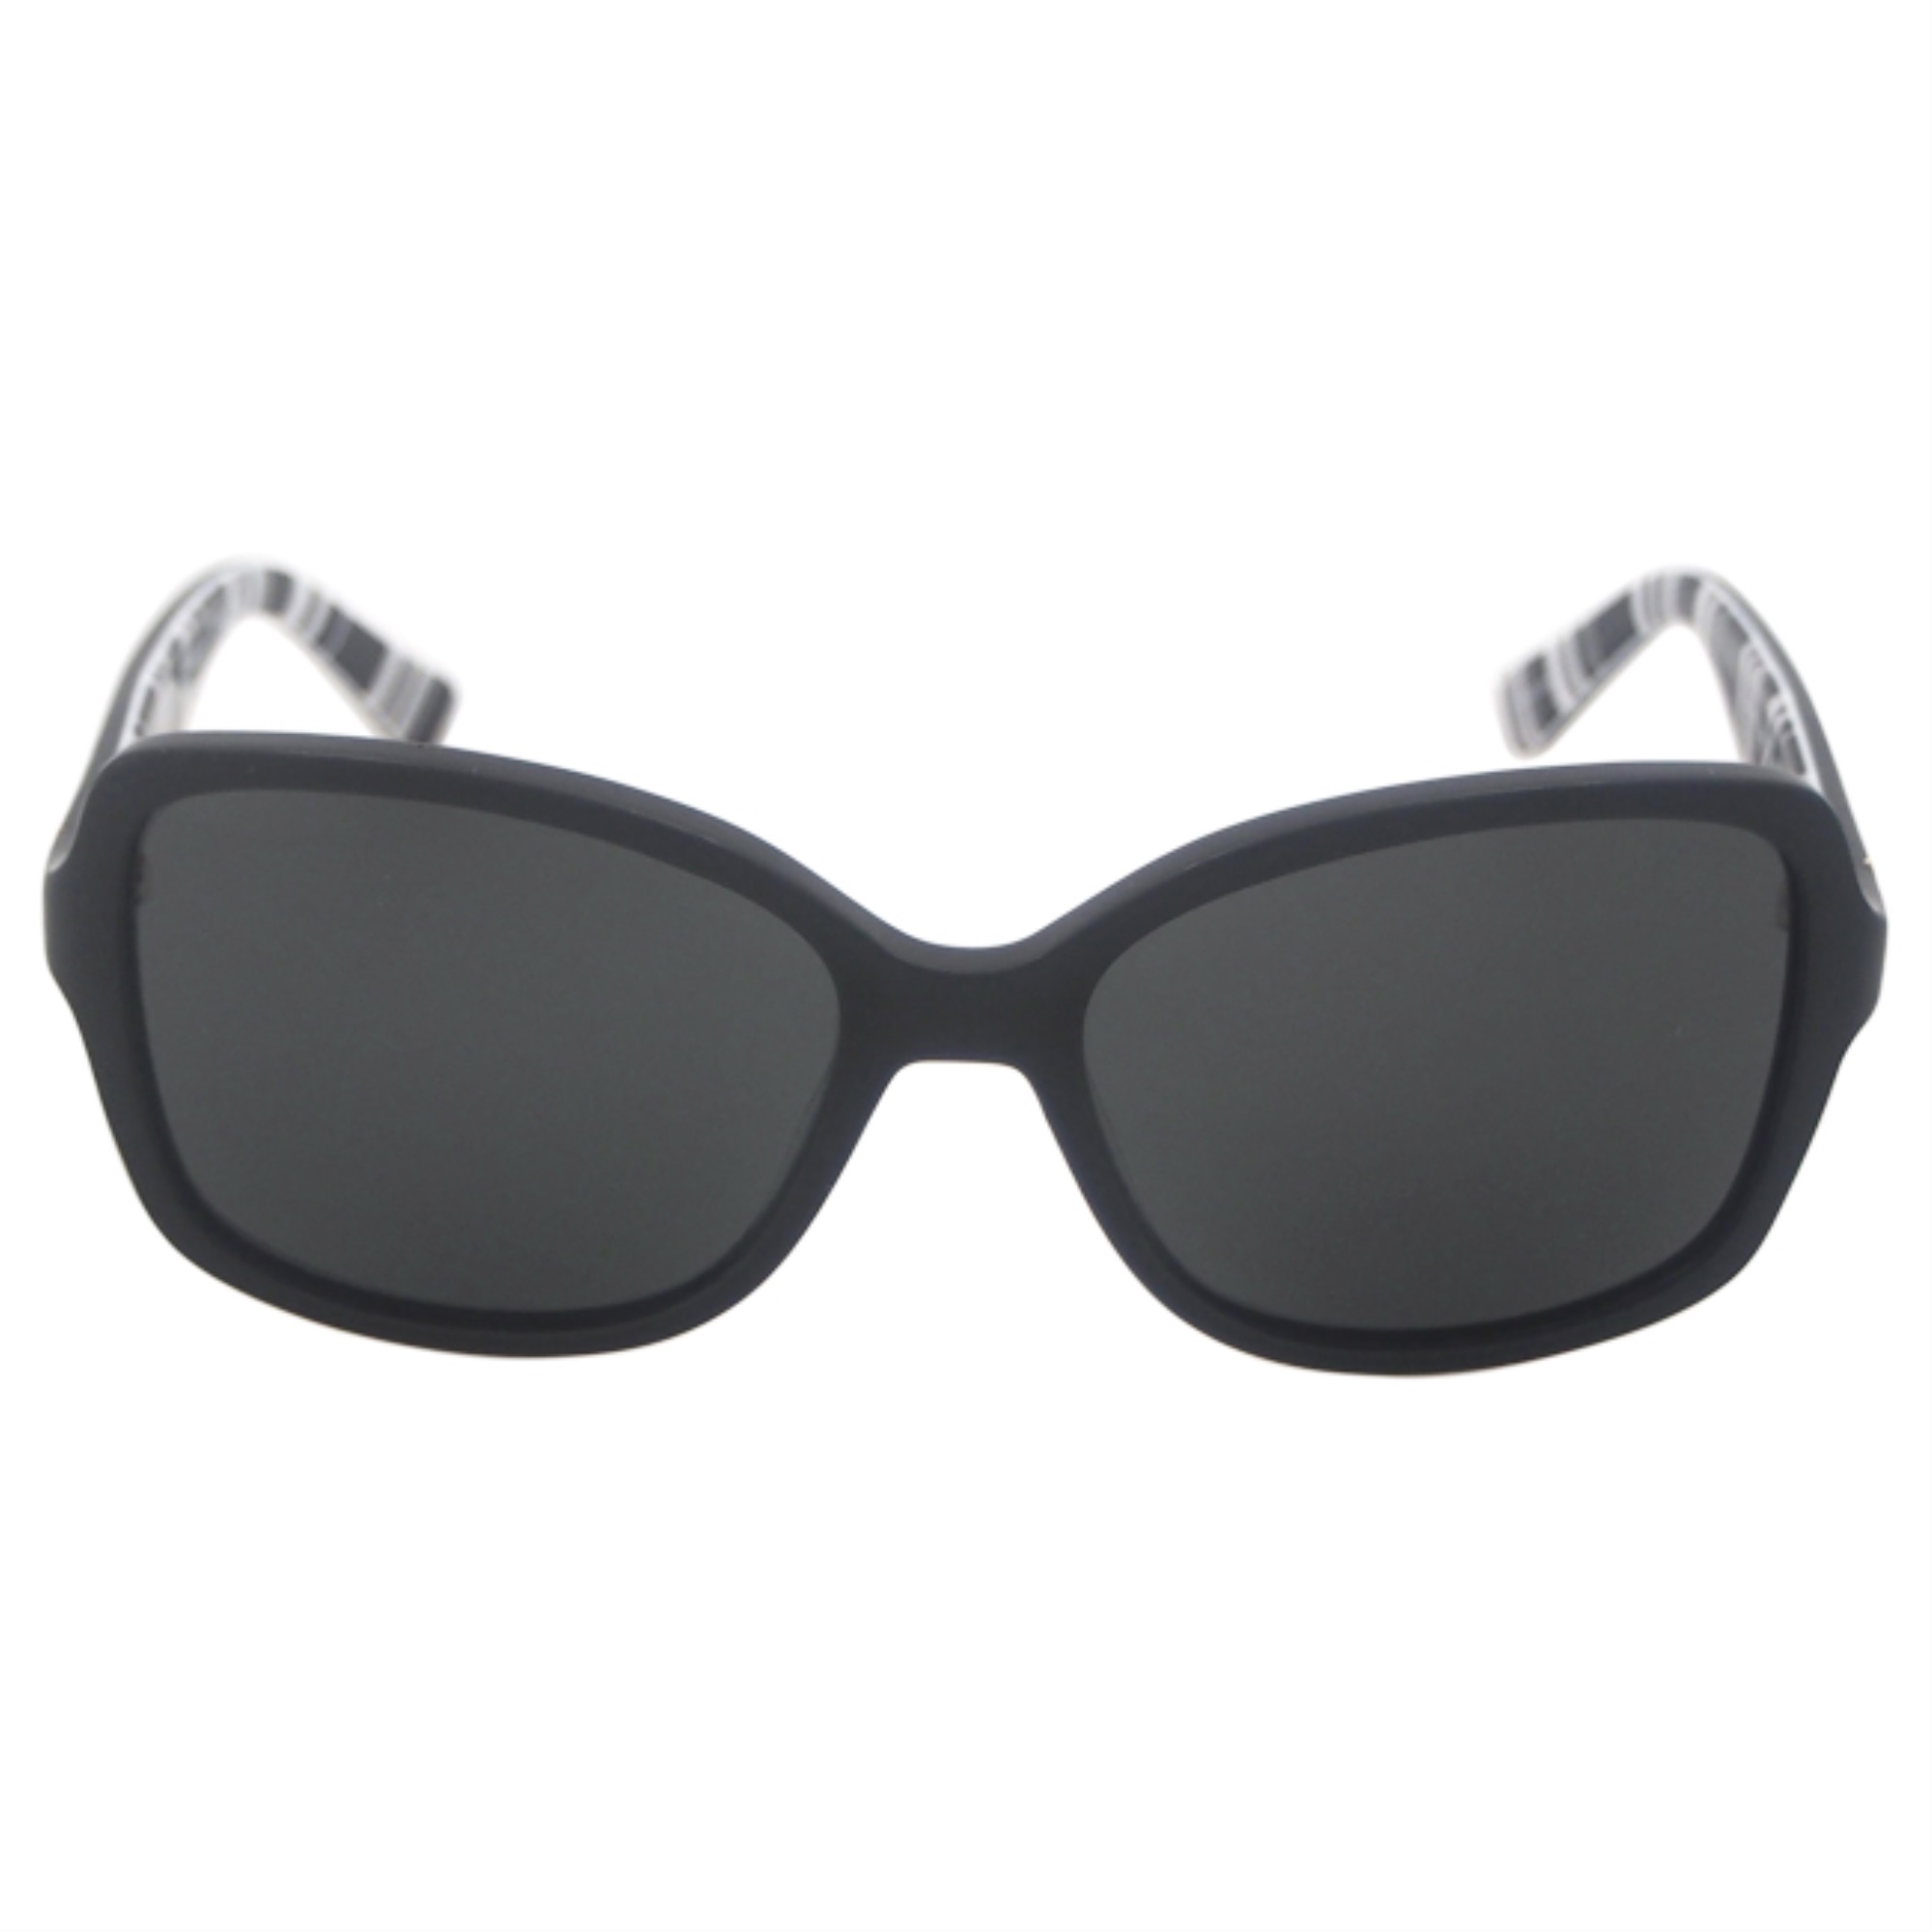 Sunglasses Kate Spade AYLEEN/P/S 0QG9 Black Ptt White / Ra Gray Polarized Lens - image 1 of 4